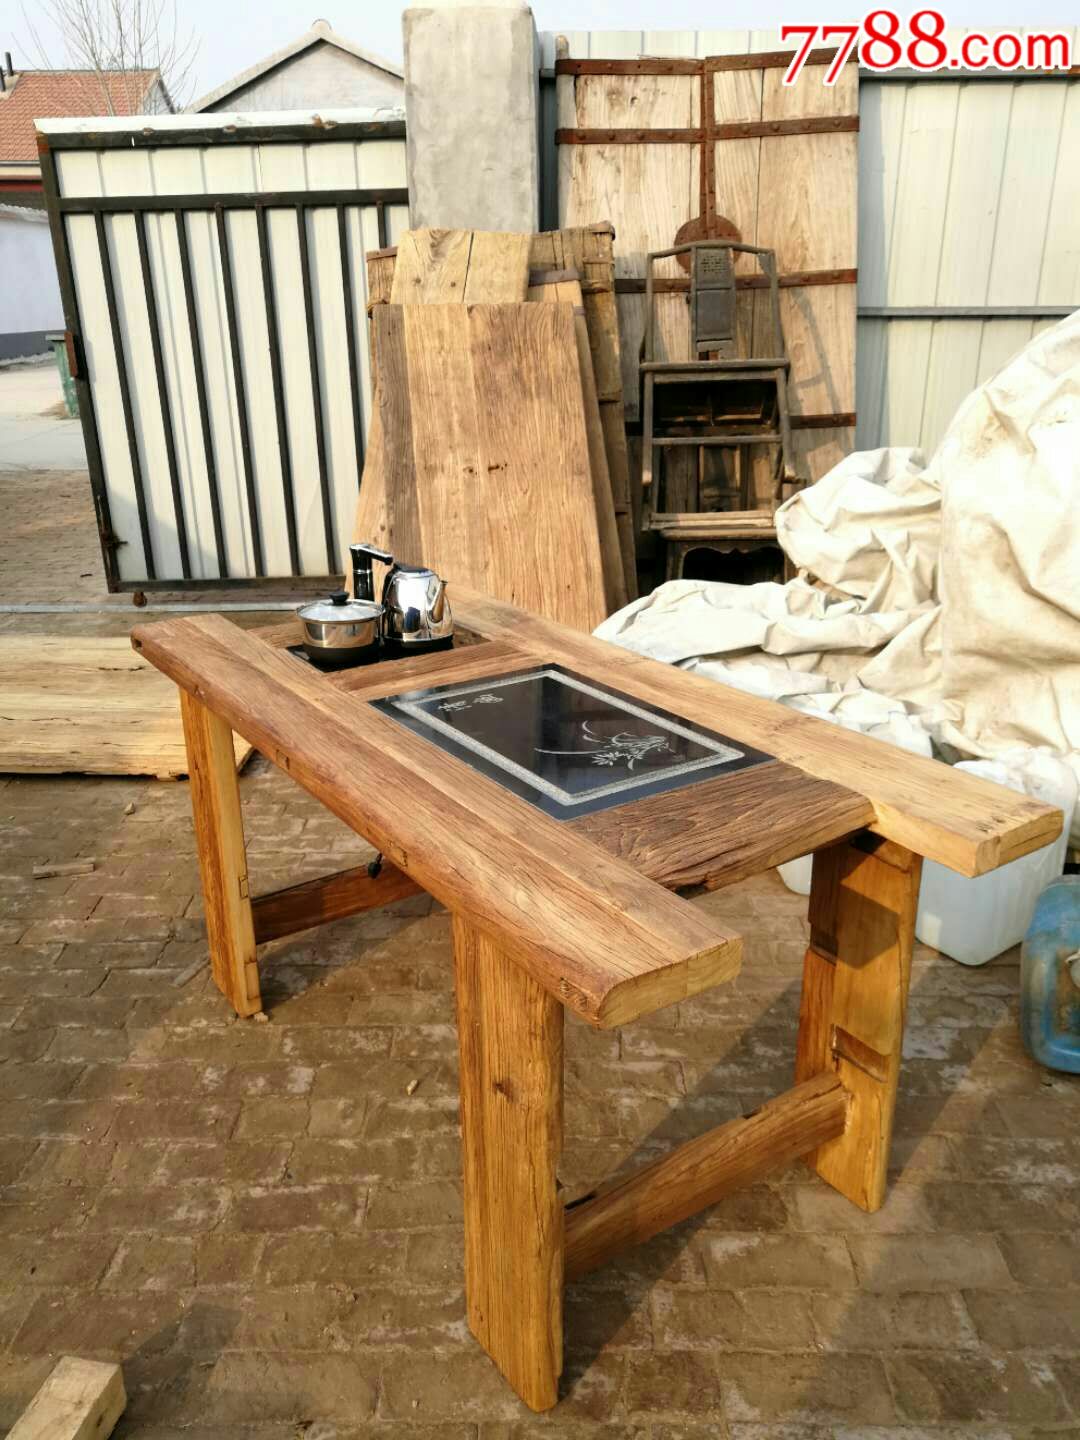 老式桌子改造成茶桌图片